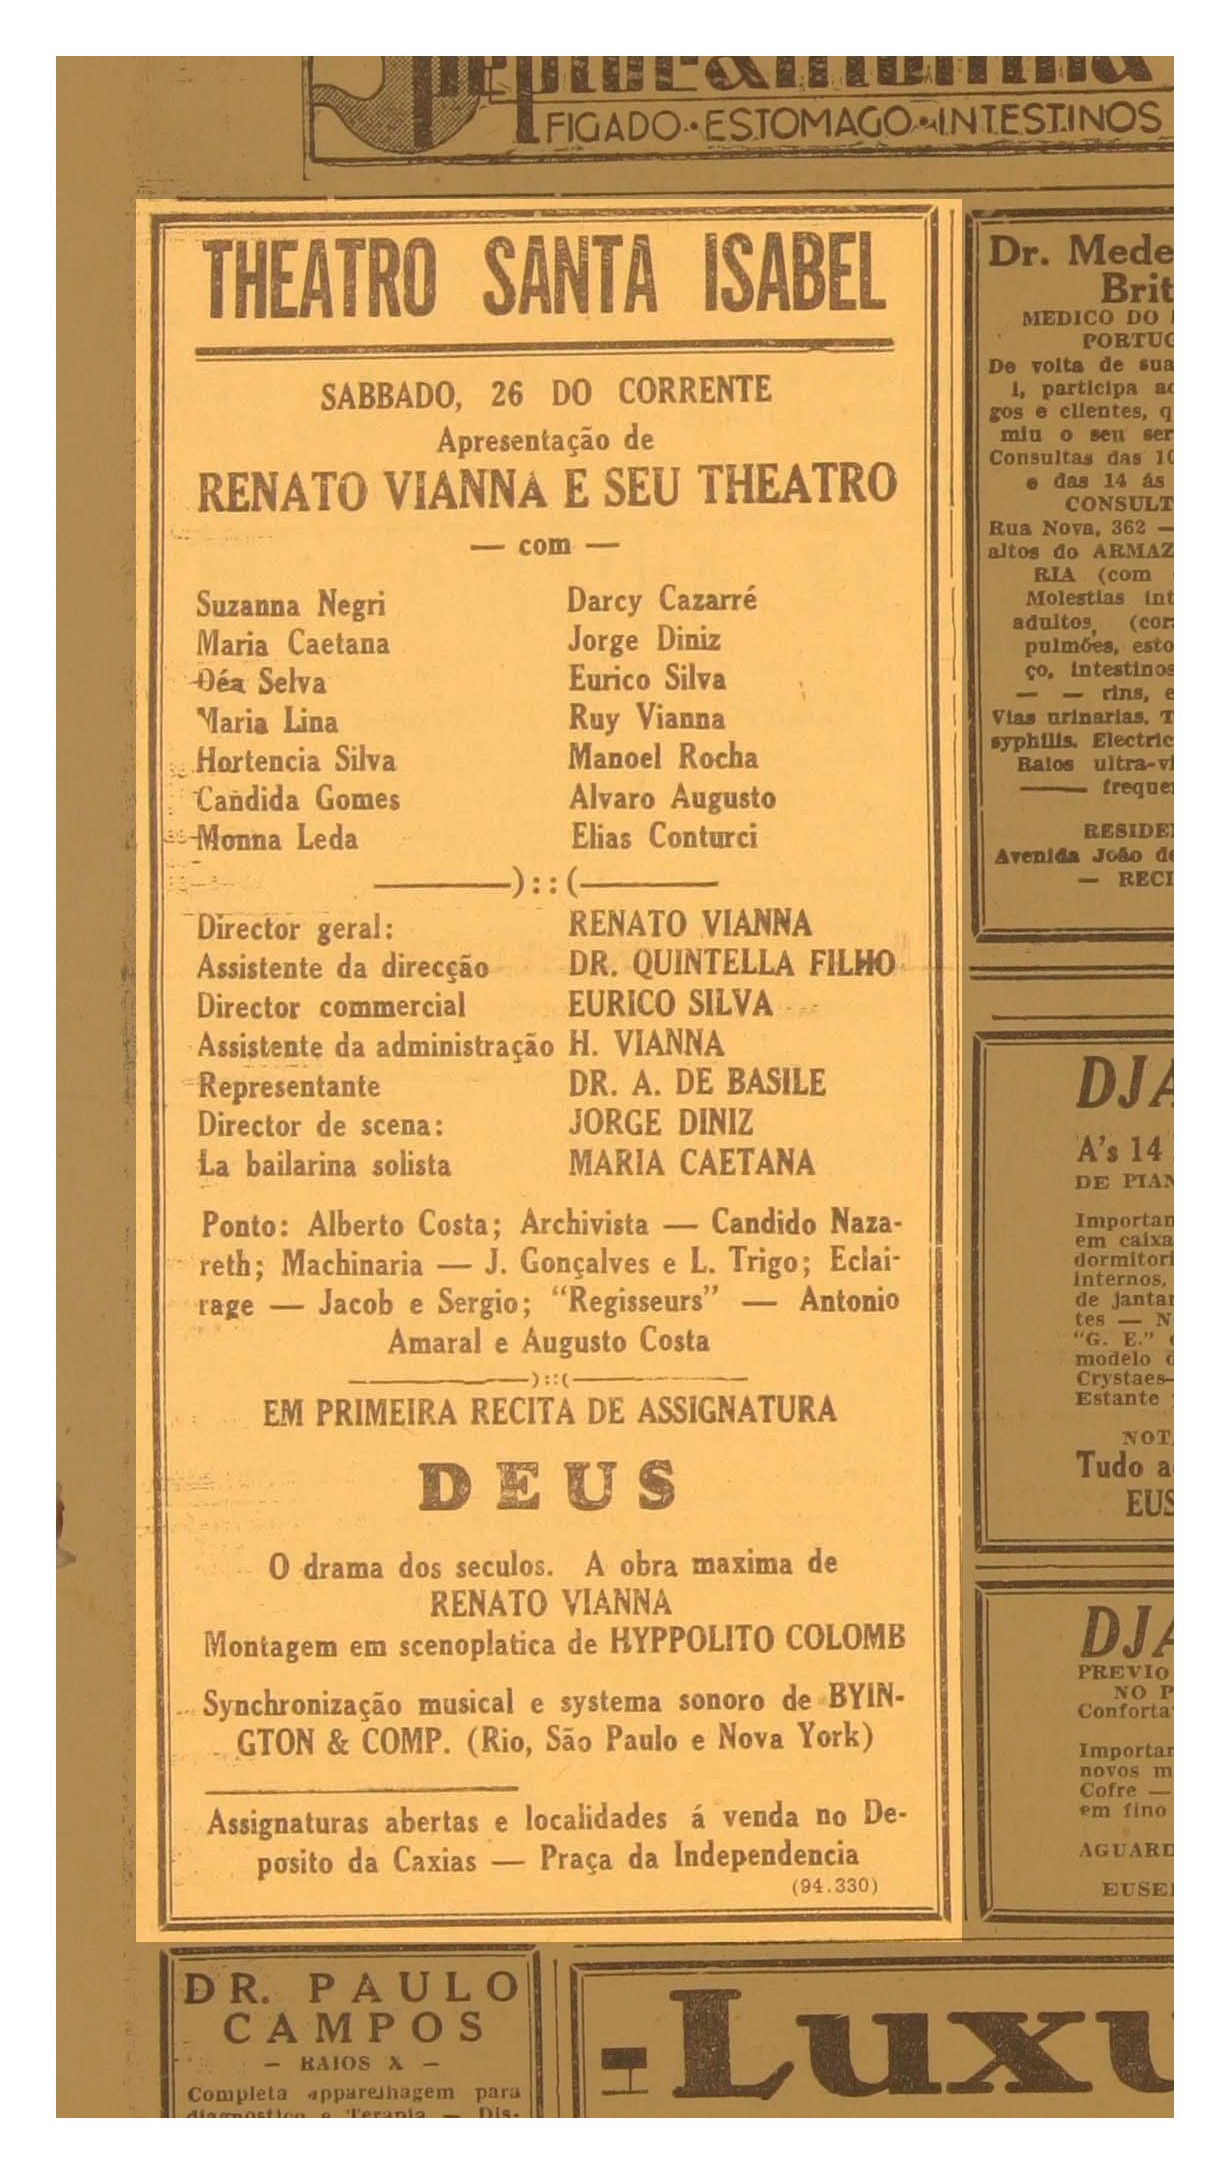 Maria Lima 1938-03-22_DiárioDaManhã_Recife-PE (2) copy